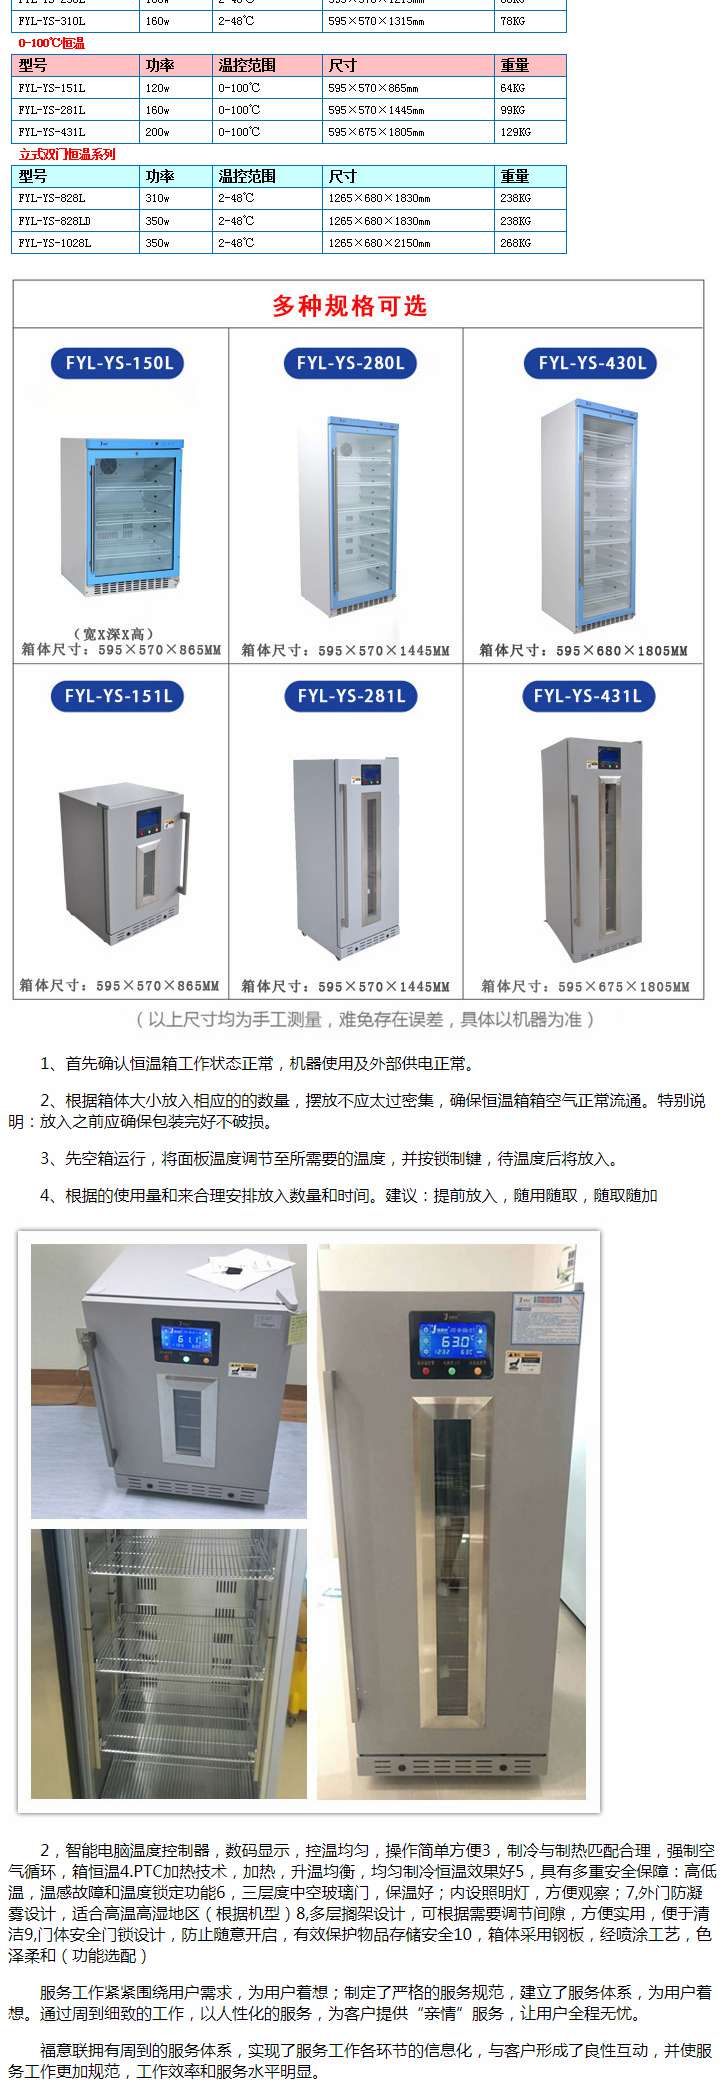 临床试验用物品存放冰箱2-8度、10-30度、-20度